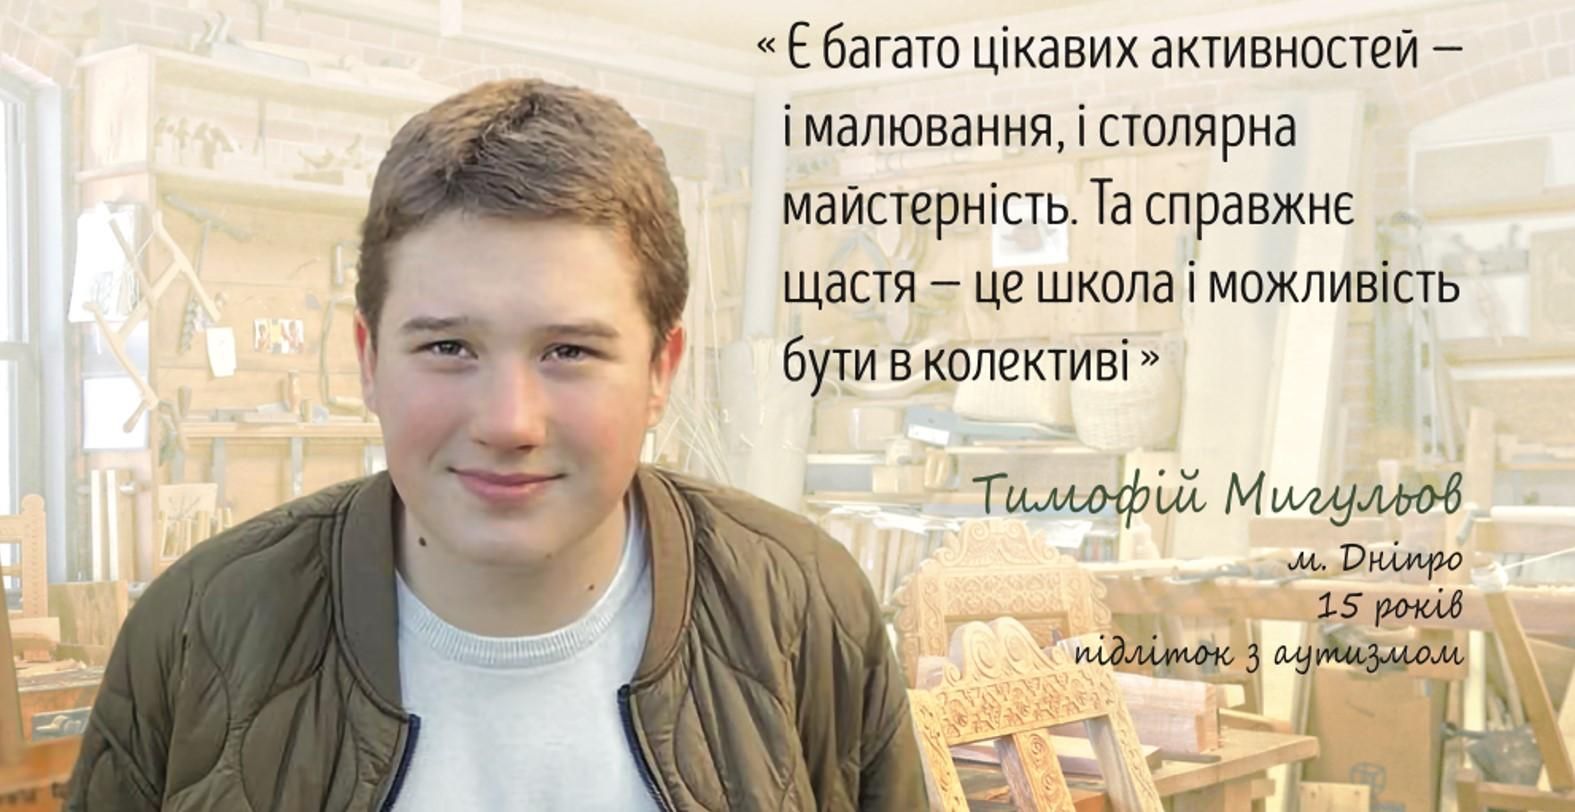 "Тимофей делает людей лучше" : история 15-летнего мальчика с аутизмом